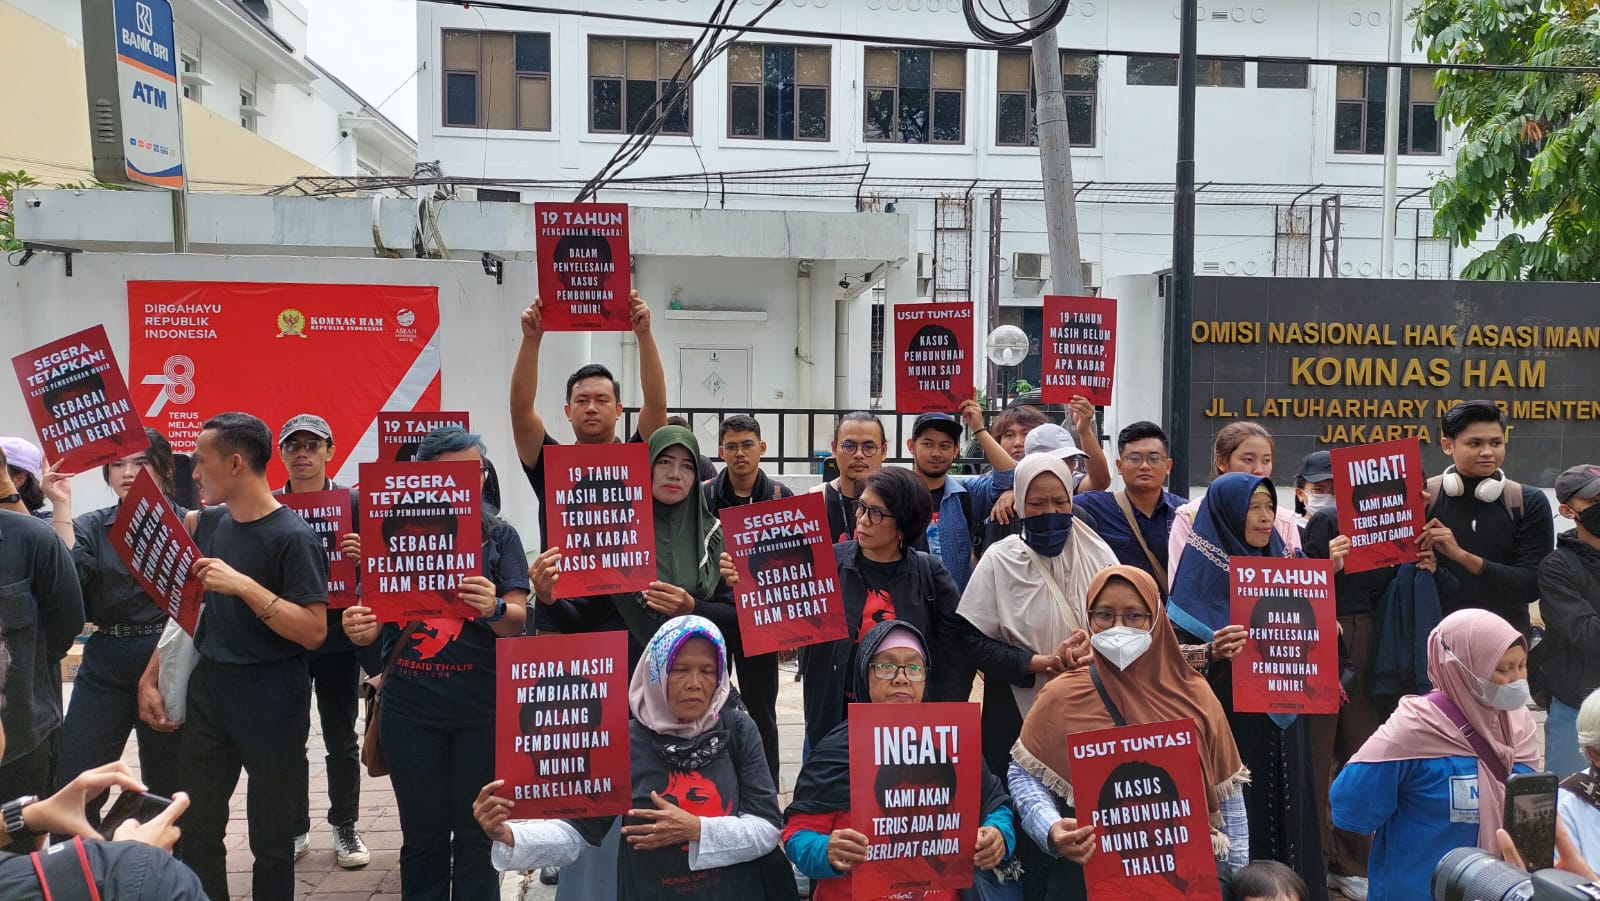 19 Tahun Belum Selesai, Puluhan Orang Tagih Janji Negara Tuntaskan Kasus Pembunuhan Munir di Kantor Komnas HAM